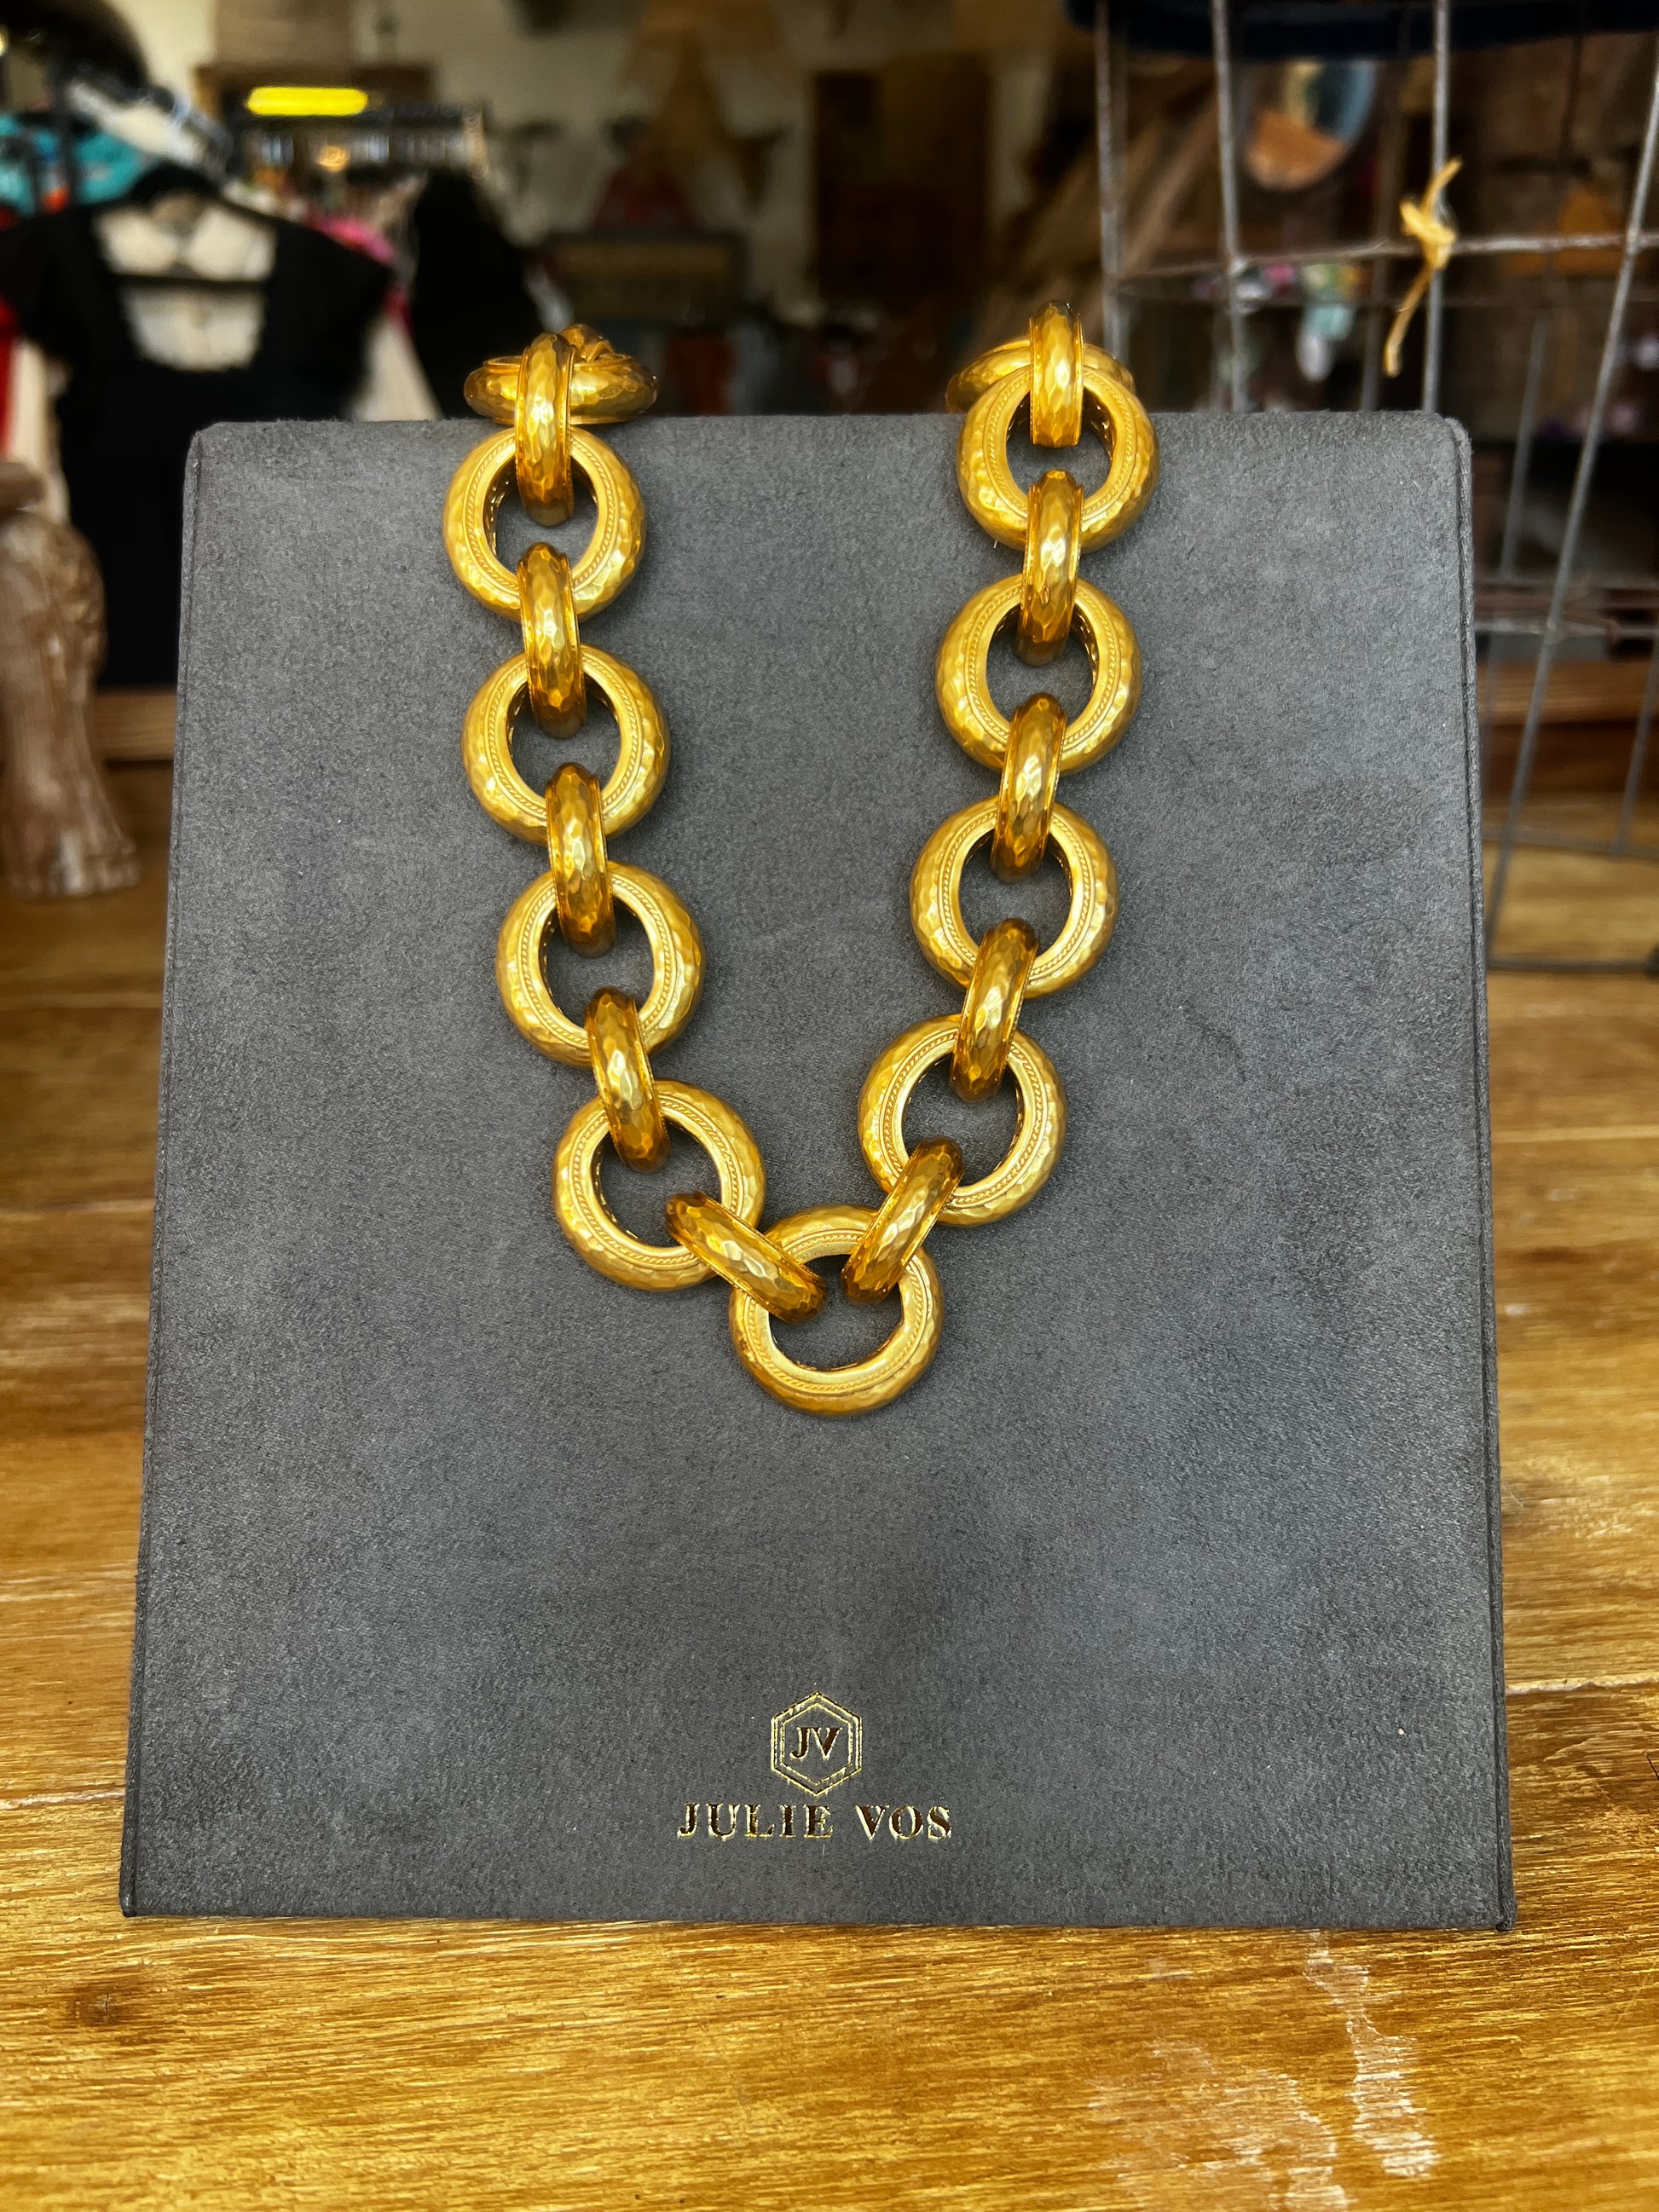 Cannes Gold Link Bracelet